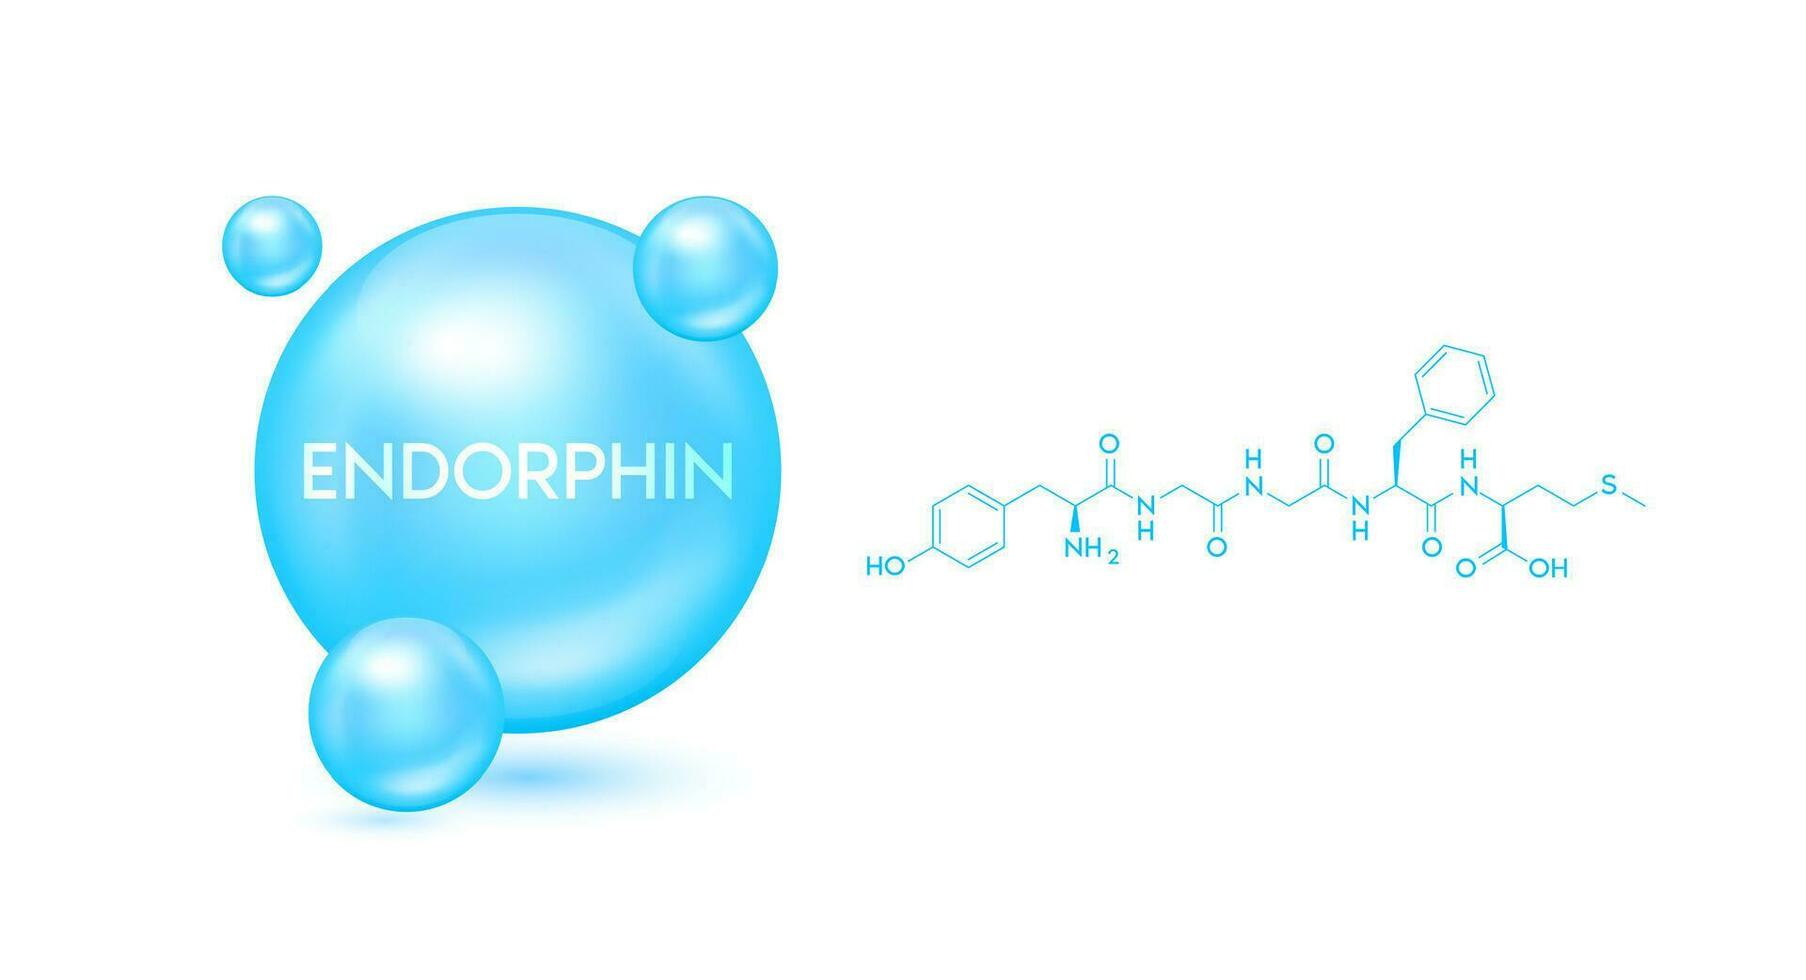 Endorphin Modell- Blau und strukturell chemisch Formel. Symbol 3d Symbol isoliert auf Weiß Hintergrund. Hormon im Mensch Gehirn. medizinisch wissenschaftlich Konzepte. Vektor Folge10.